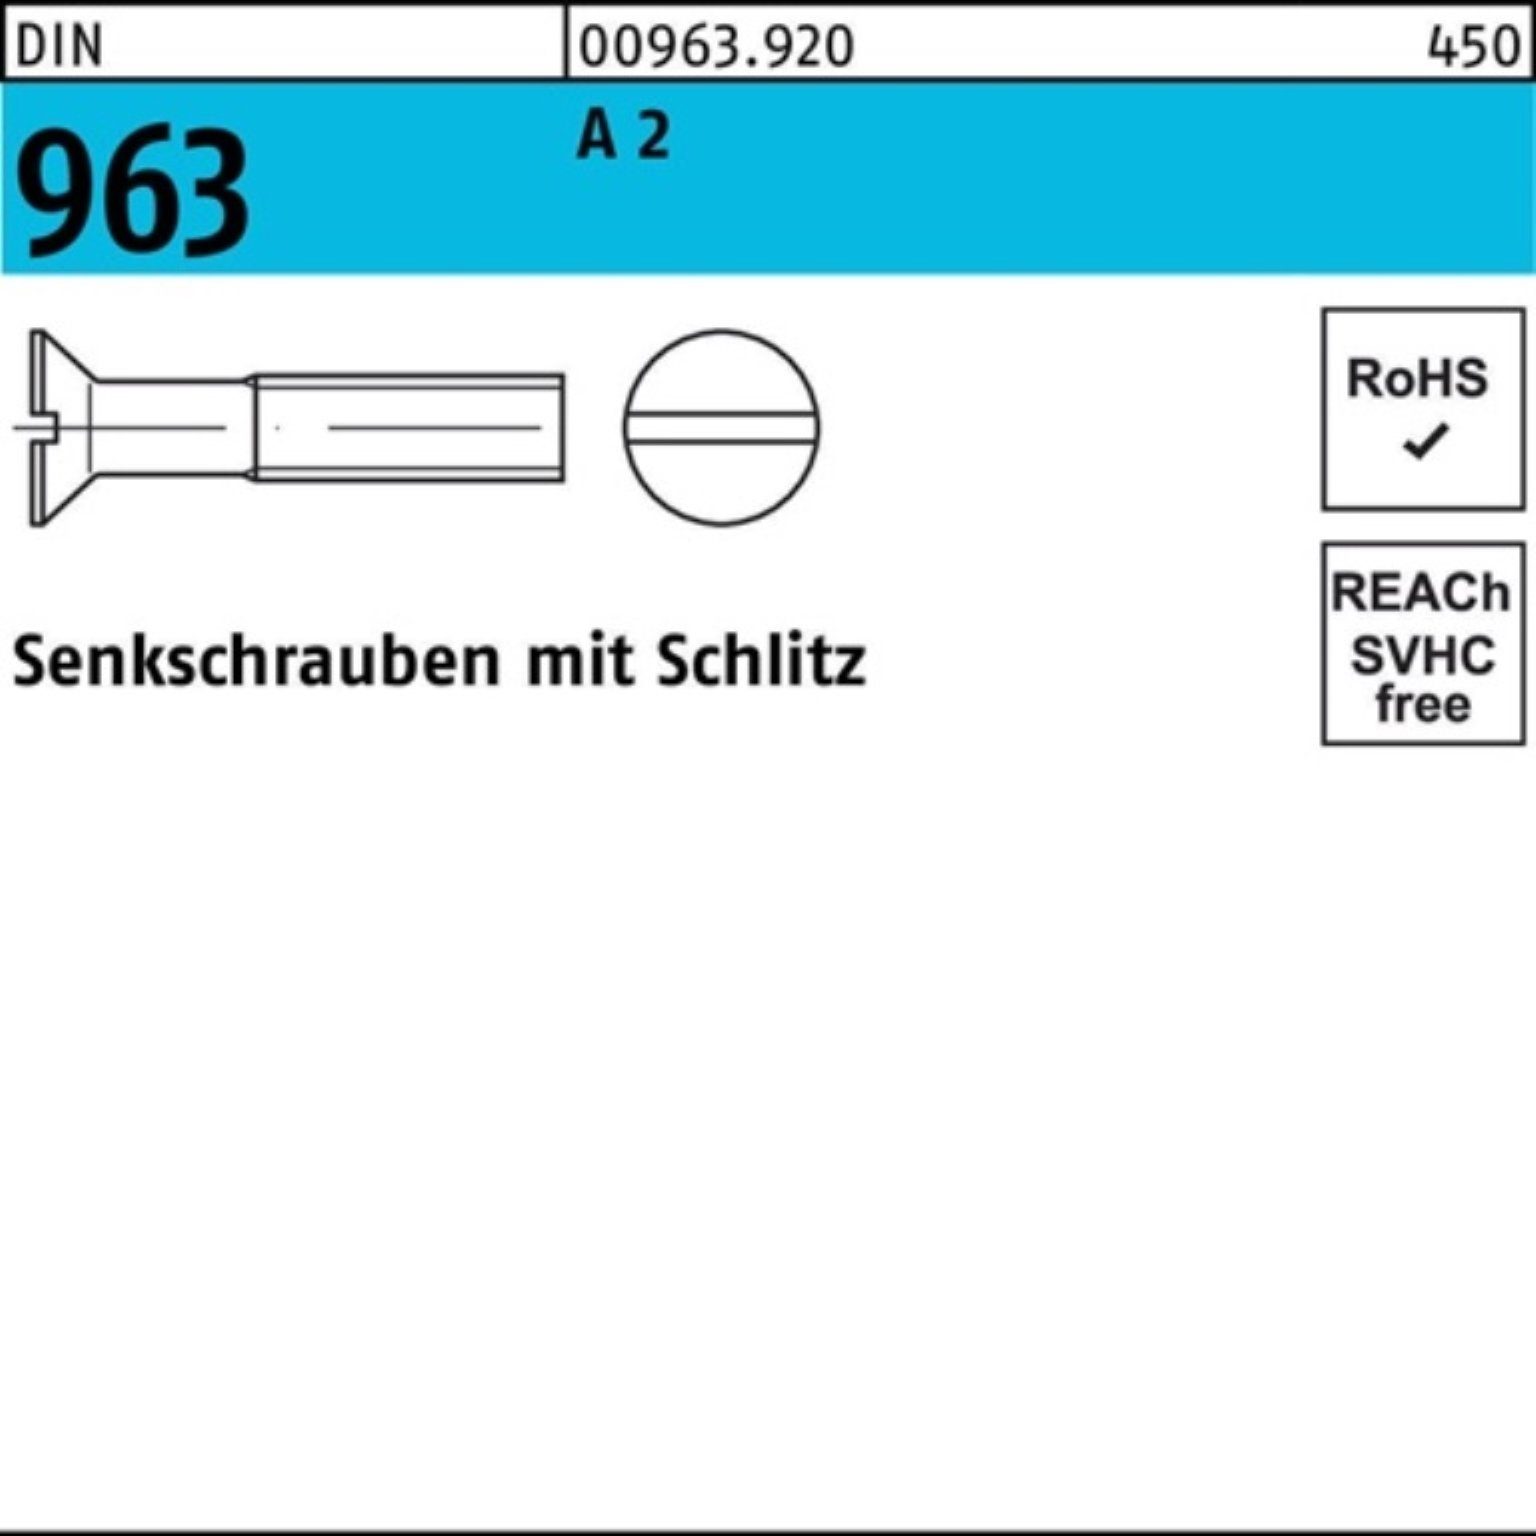 M6x A DIN Senkschraube 963 963 2 130 Stück Schlitz Senkschraube Pack Reyher DIN 25 100er